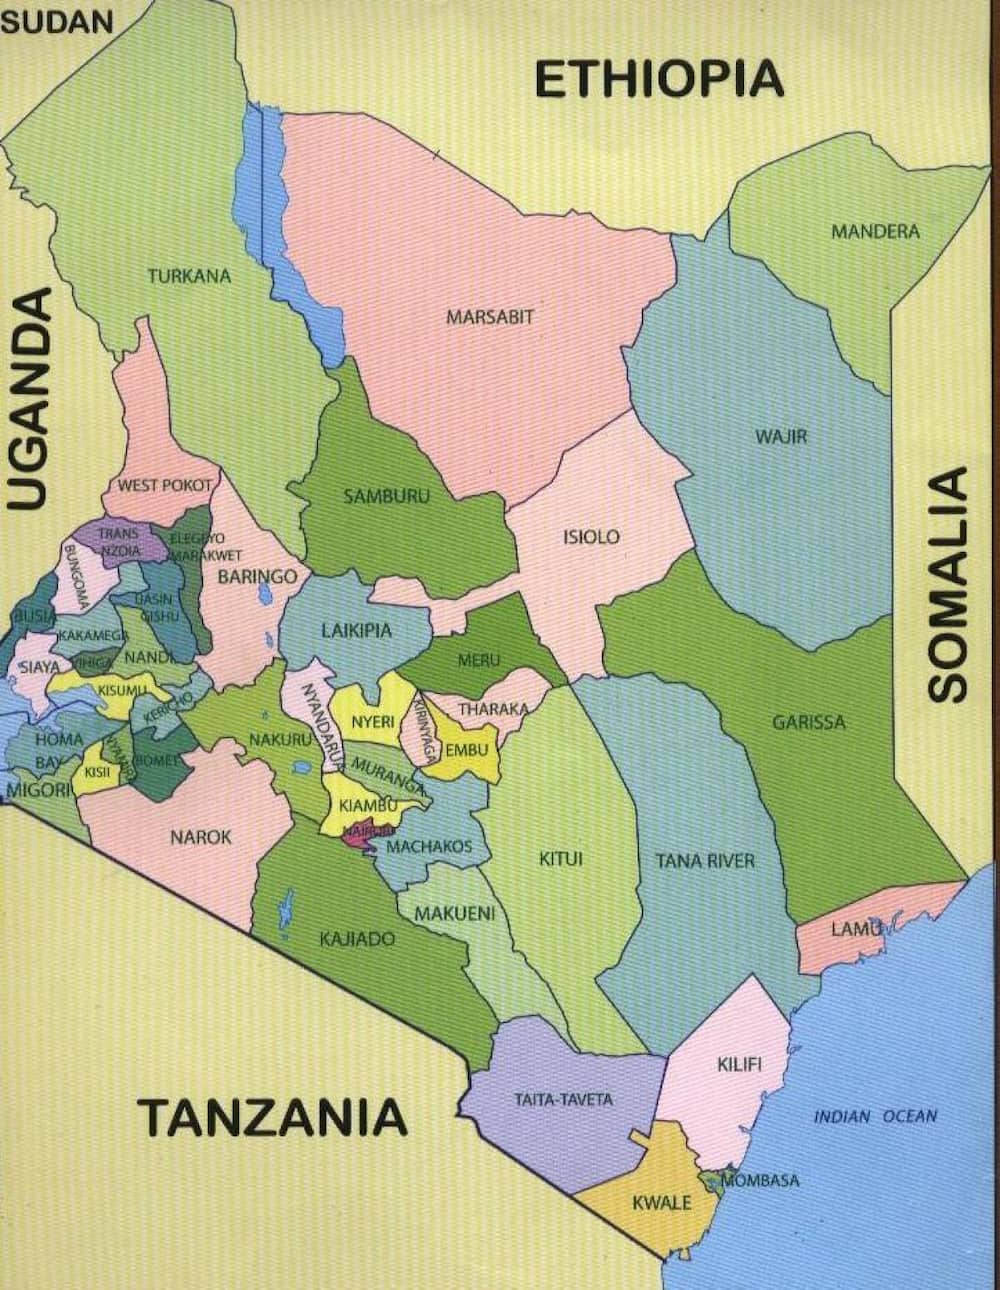 Counties in Kenya